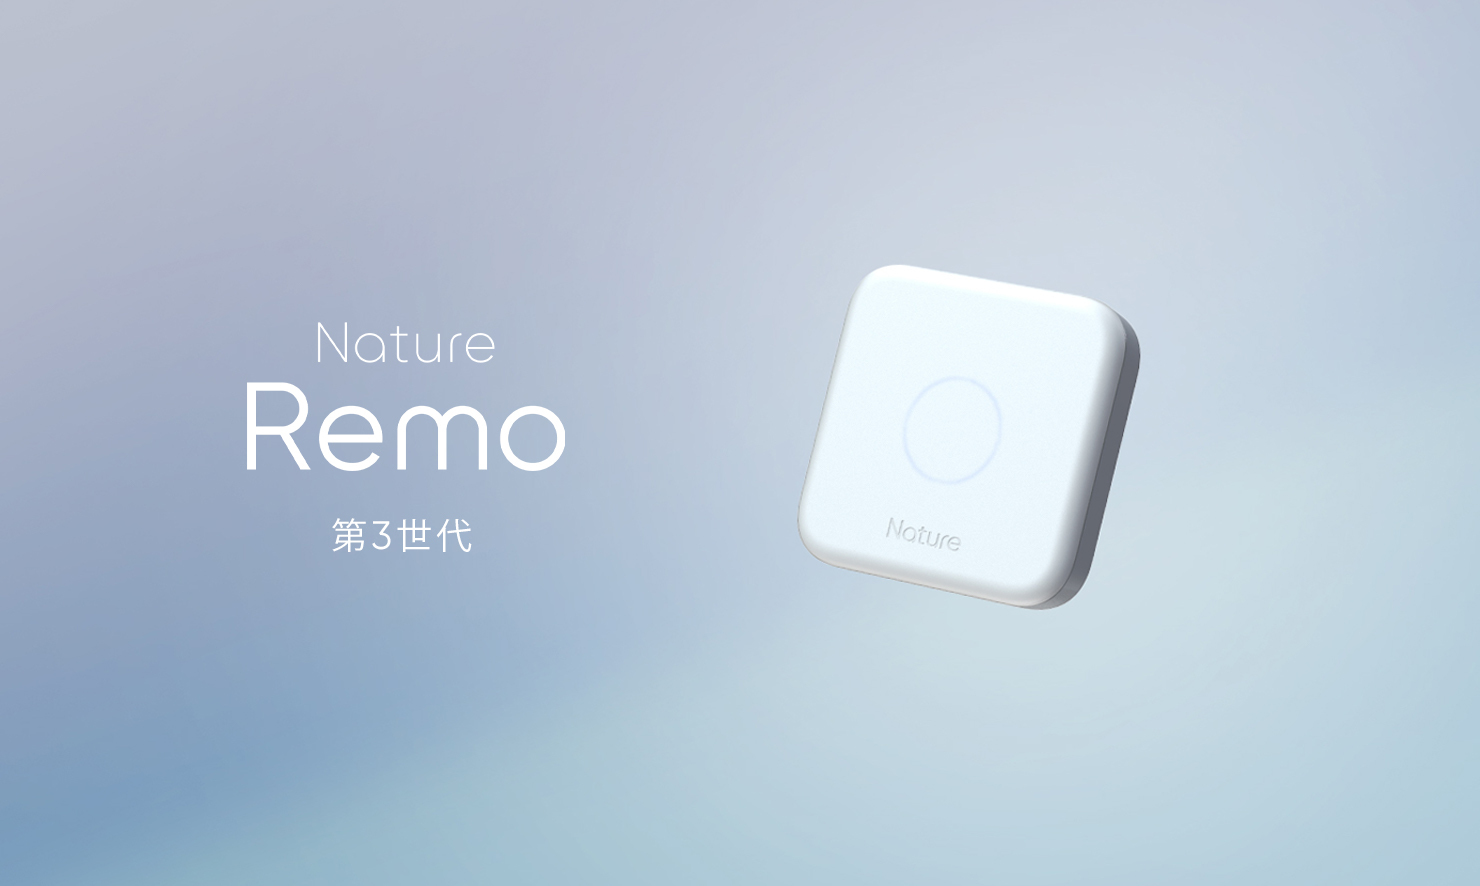 スマートリモコンNature Remo 3発表。センサー精度を向上しBLEにも対応